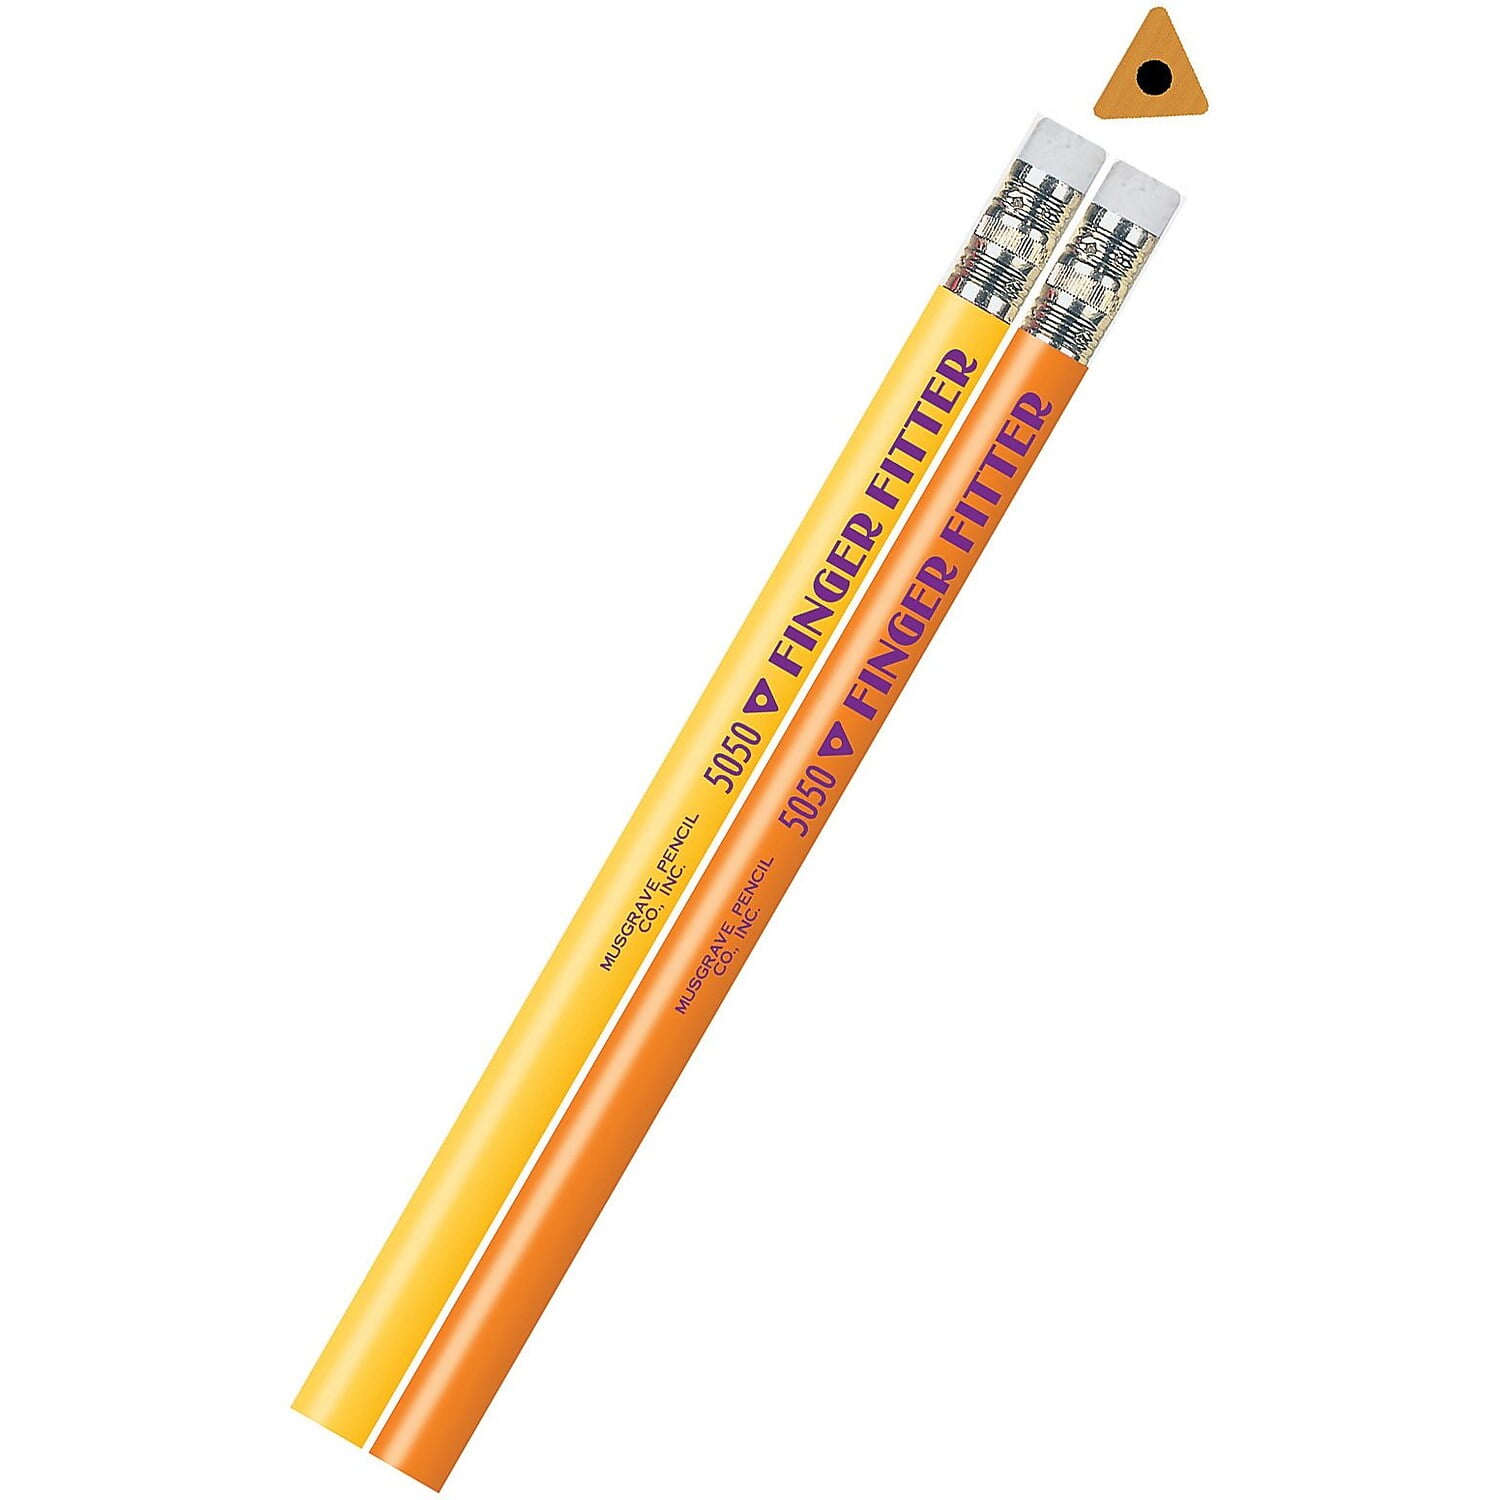 新型Apple Pencil（USB-C）はシリーズ最安値12,880円 – 新機能と省略された機能とは？ - OTONA LIFE